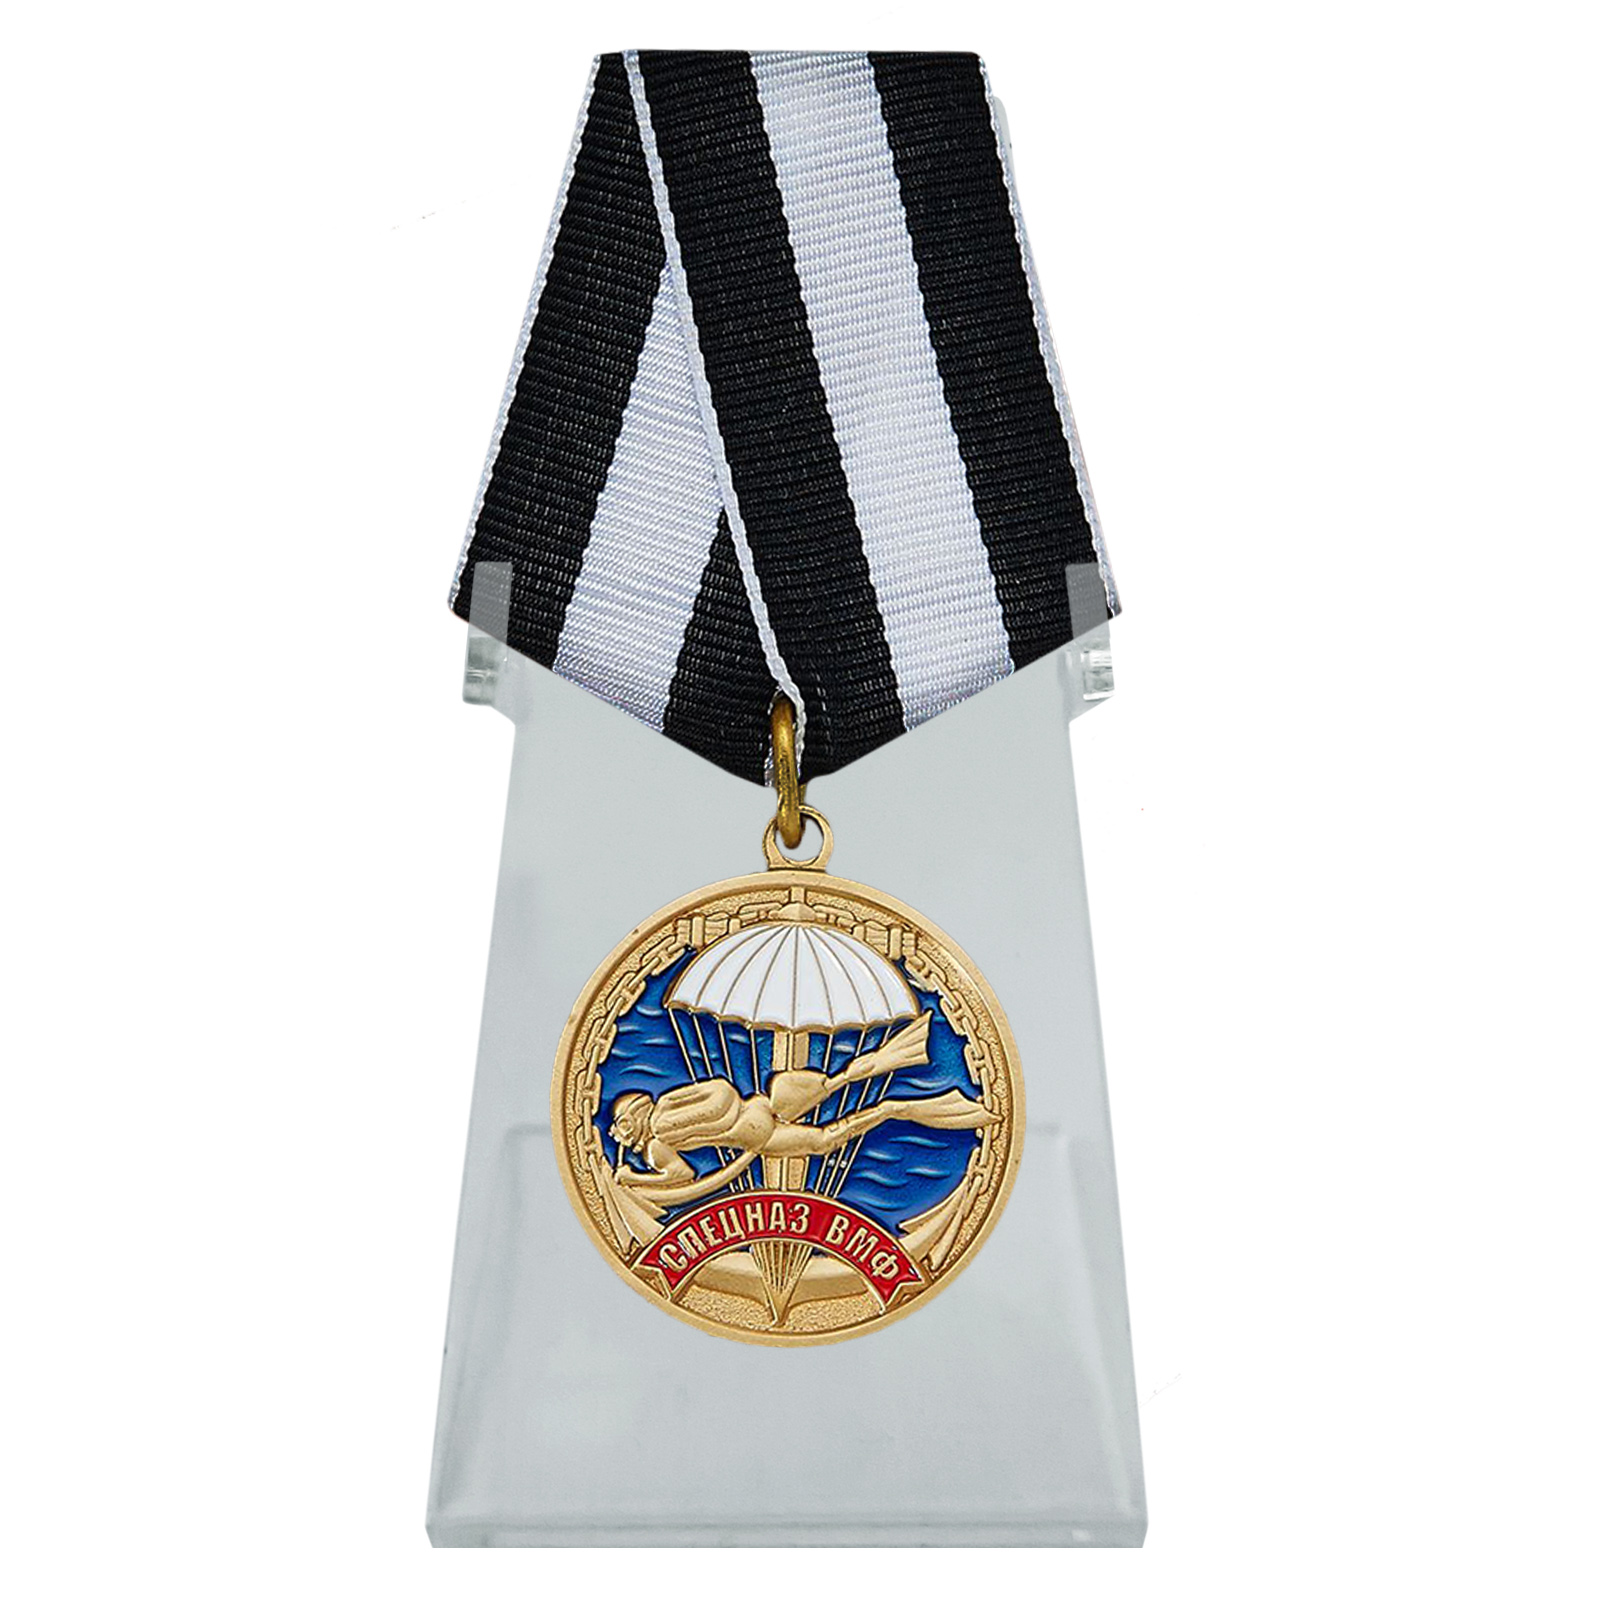 Медаль Спецназа ВМФ "Ветеран" на подставке